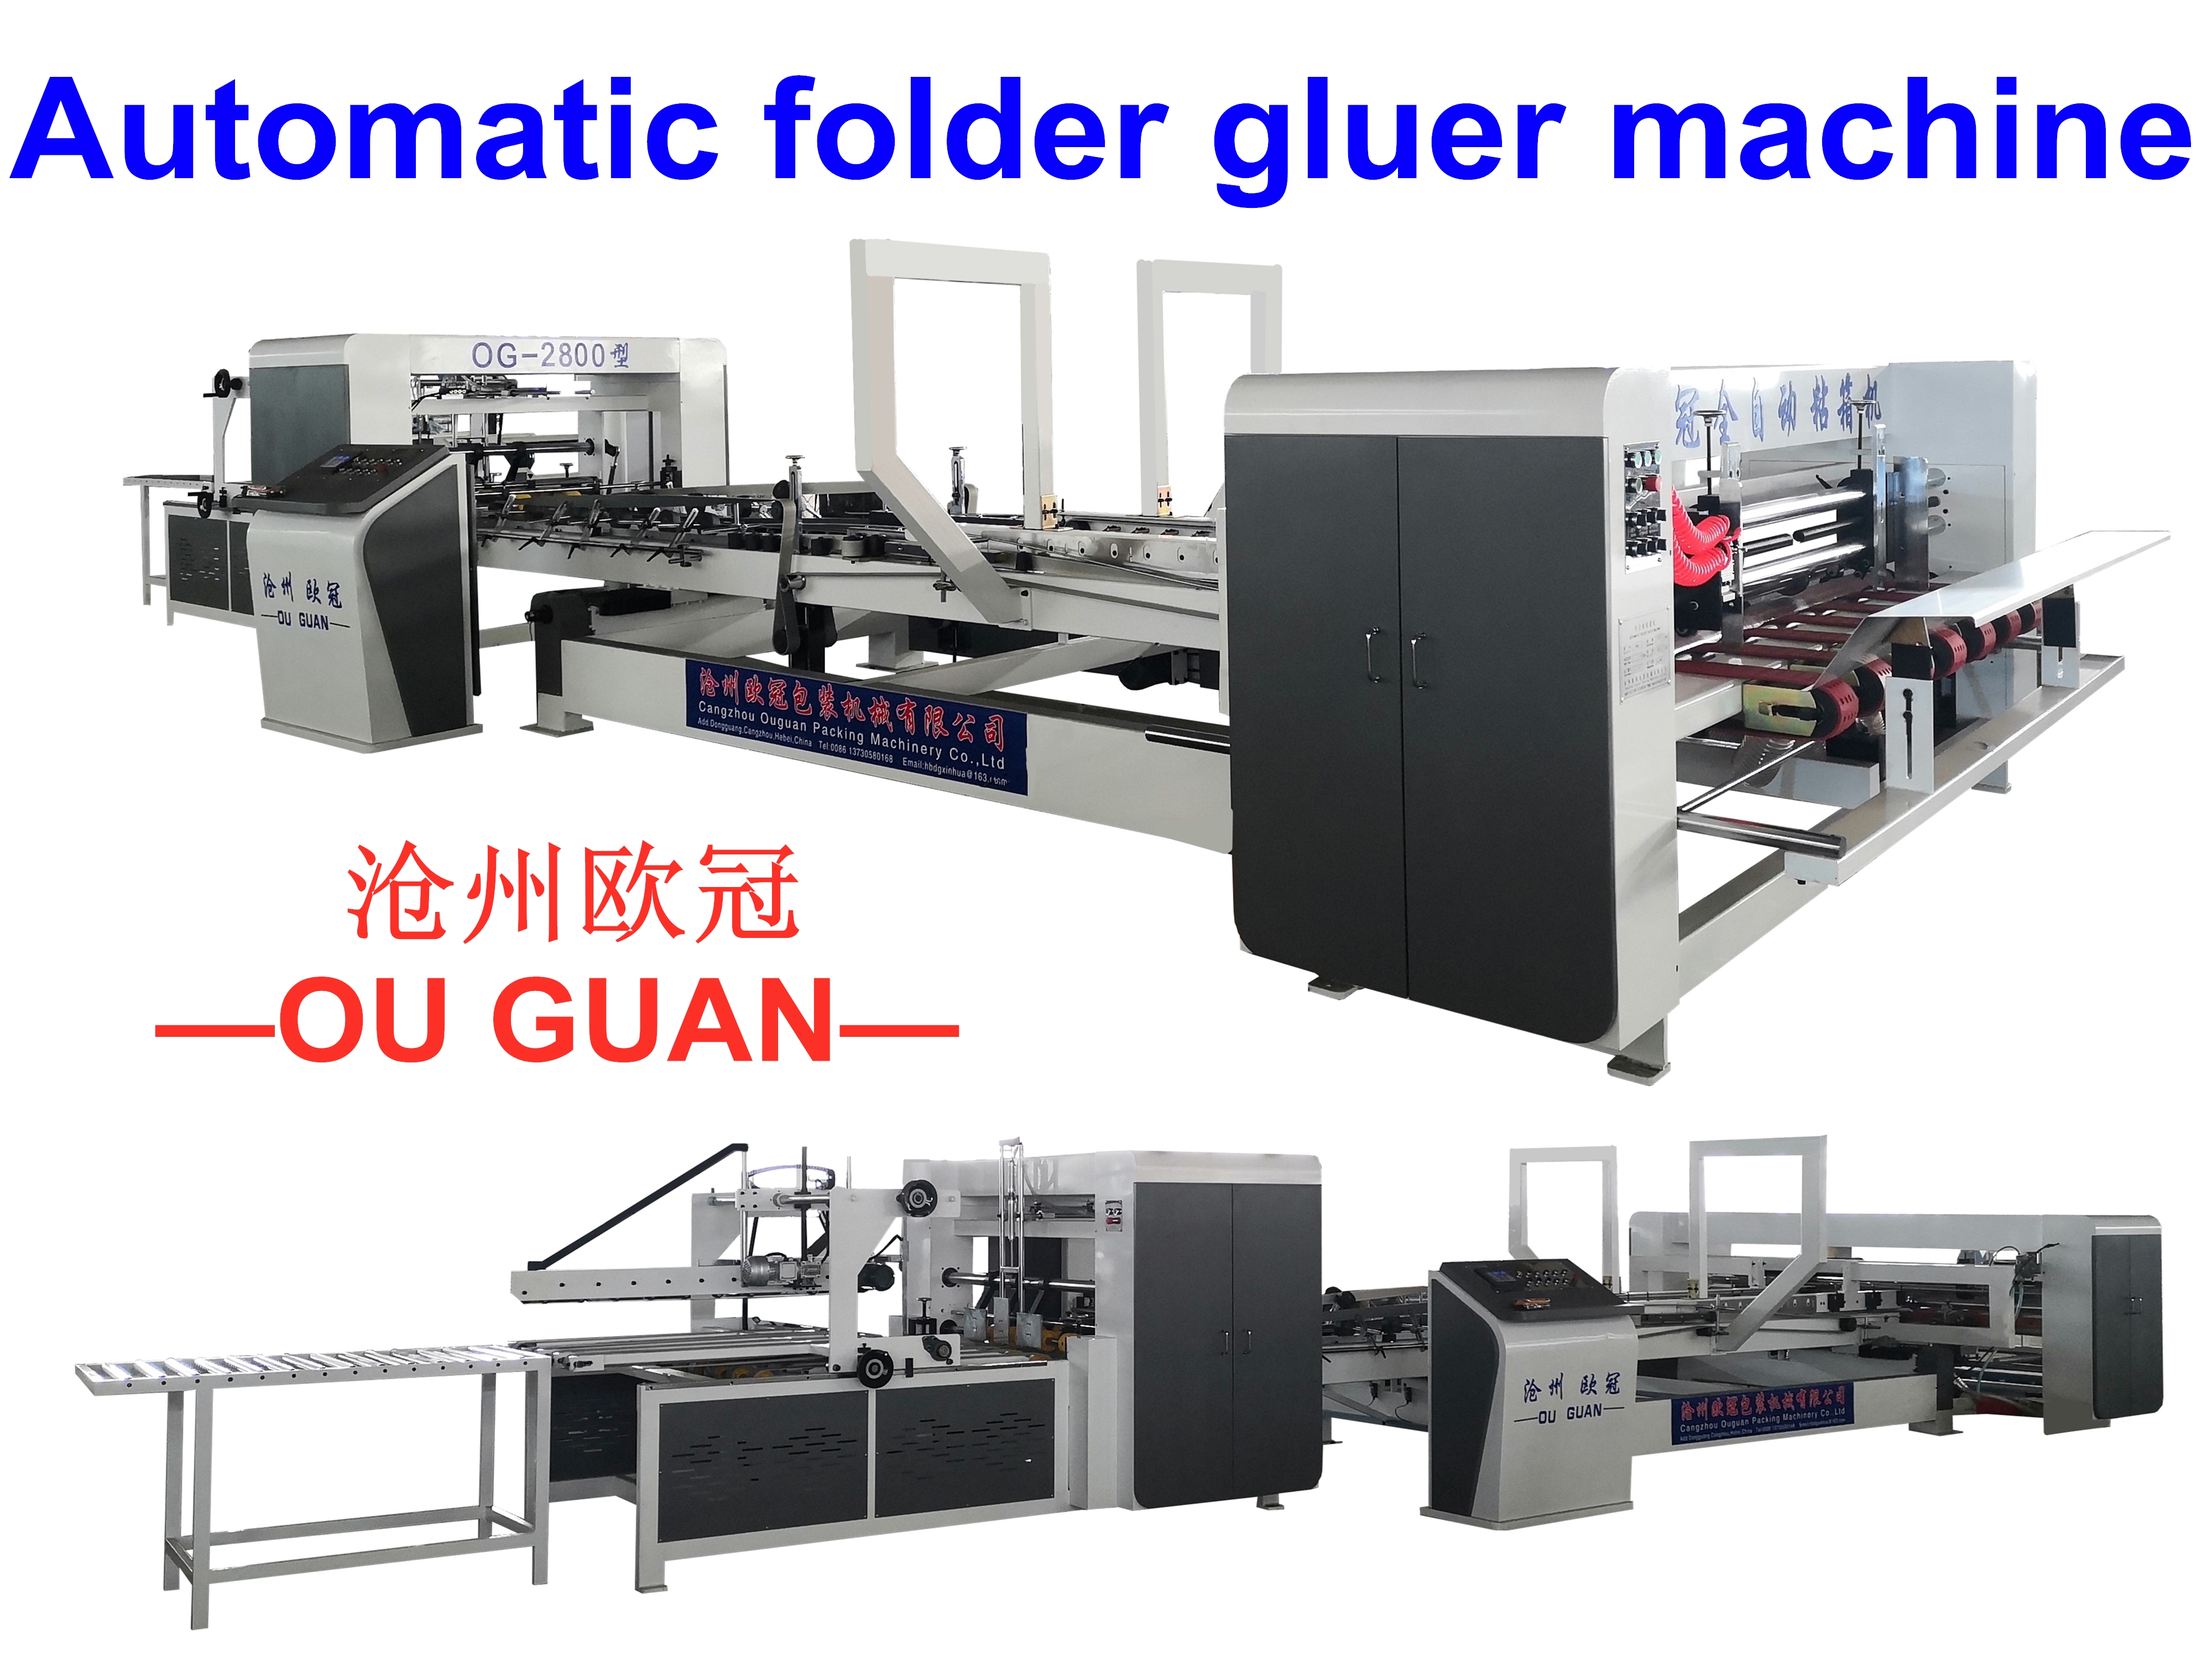 Manufacturer corrugated cardboard automatic folder gluer machine